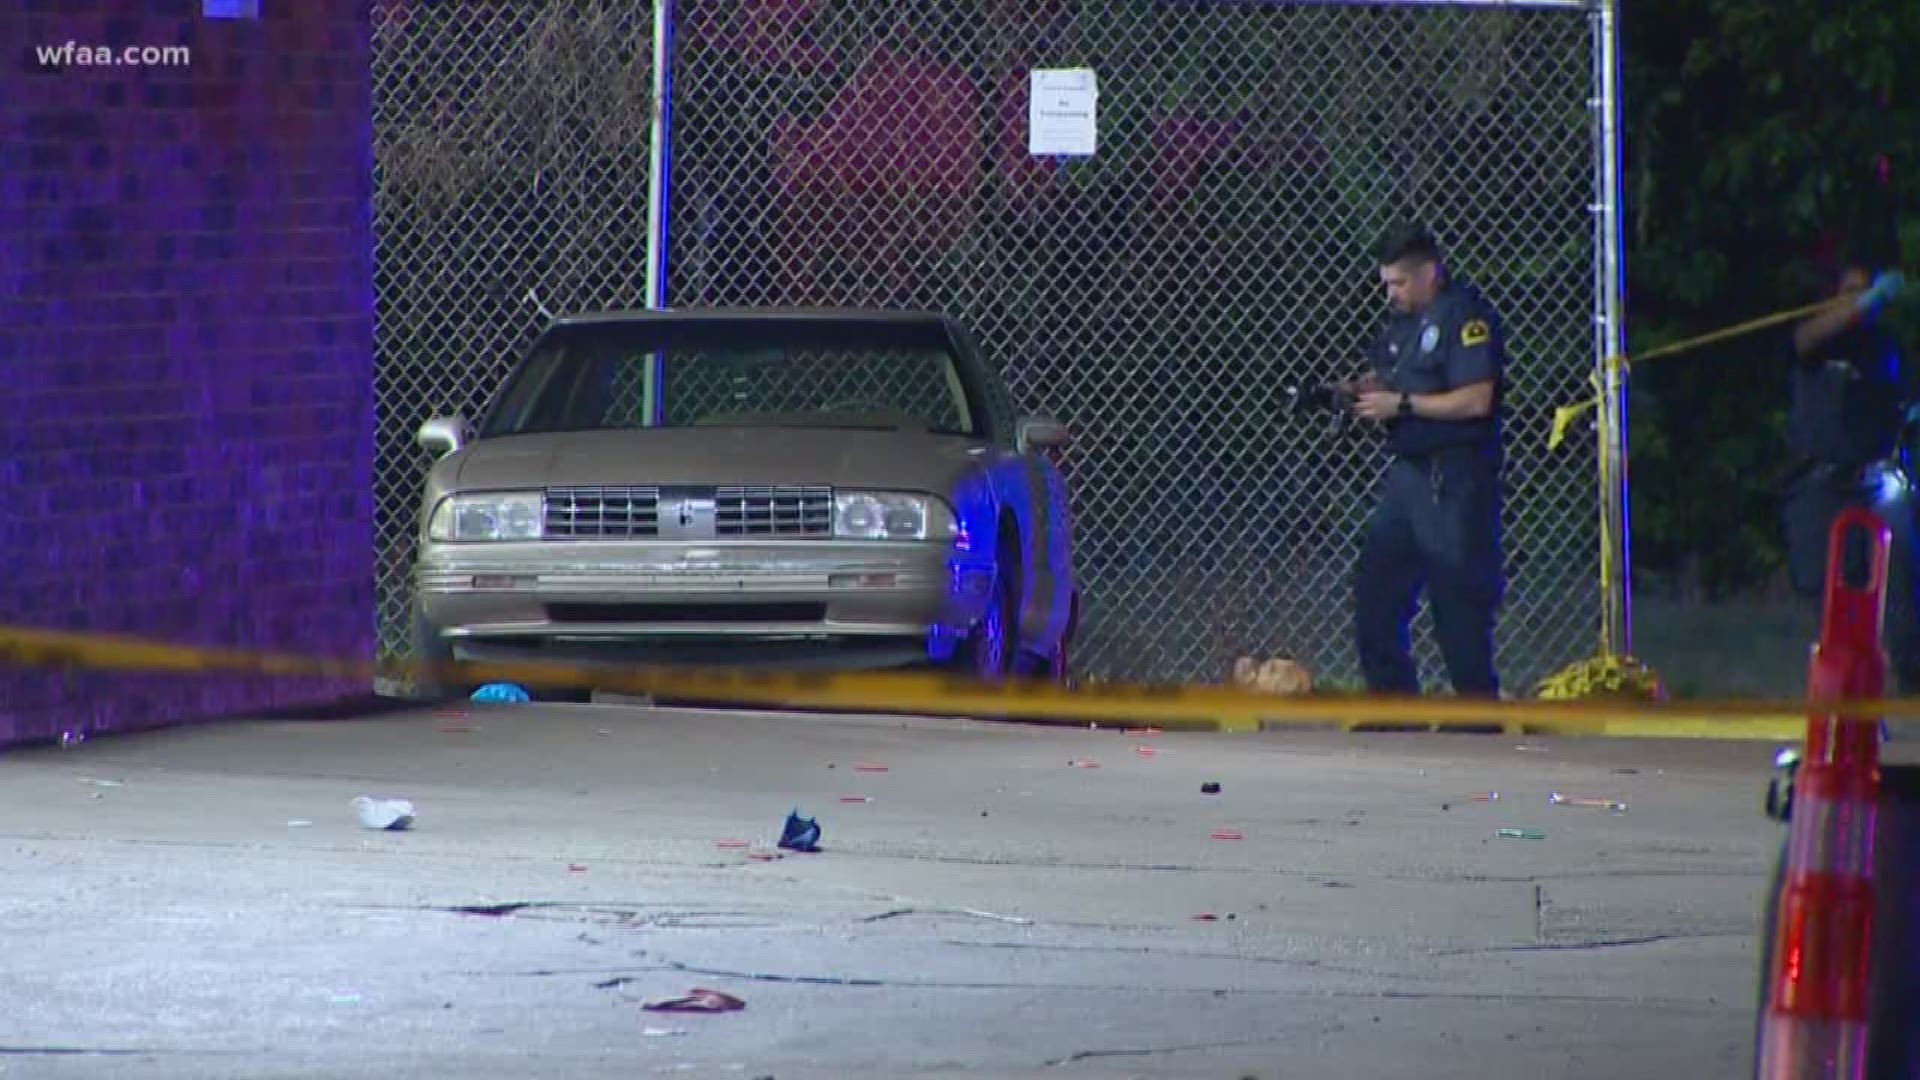 4 shot, 1 killed at car wash in South Dallas, police say